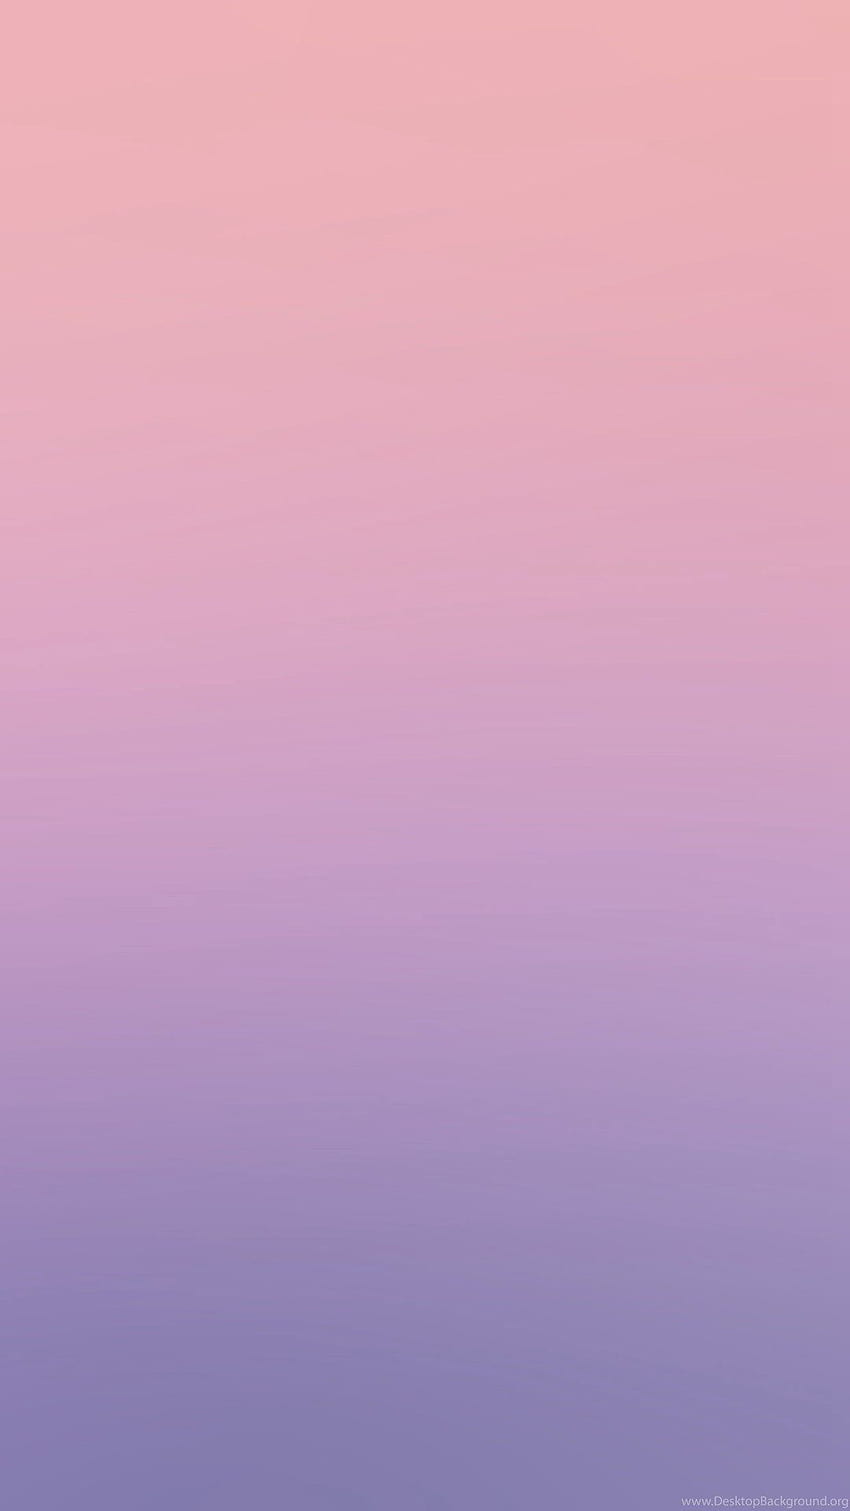 Latar Belakang iPhone 6 Merah Muda, Merah Muda Muda wallpaper ponsel HD